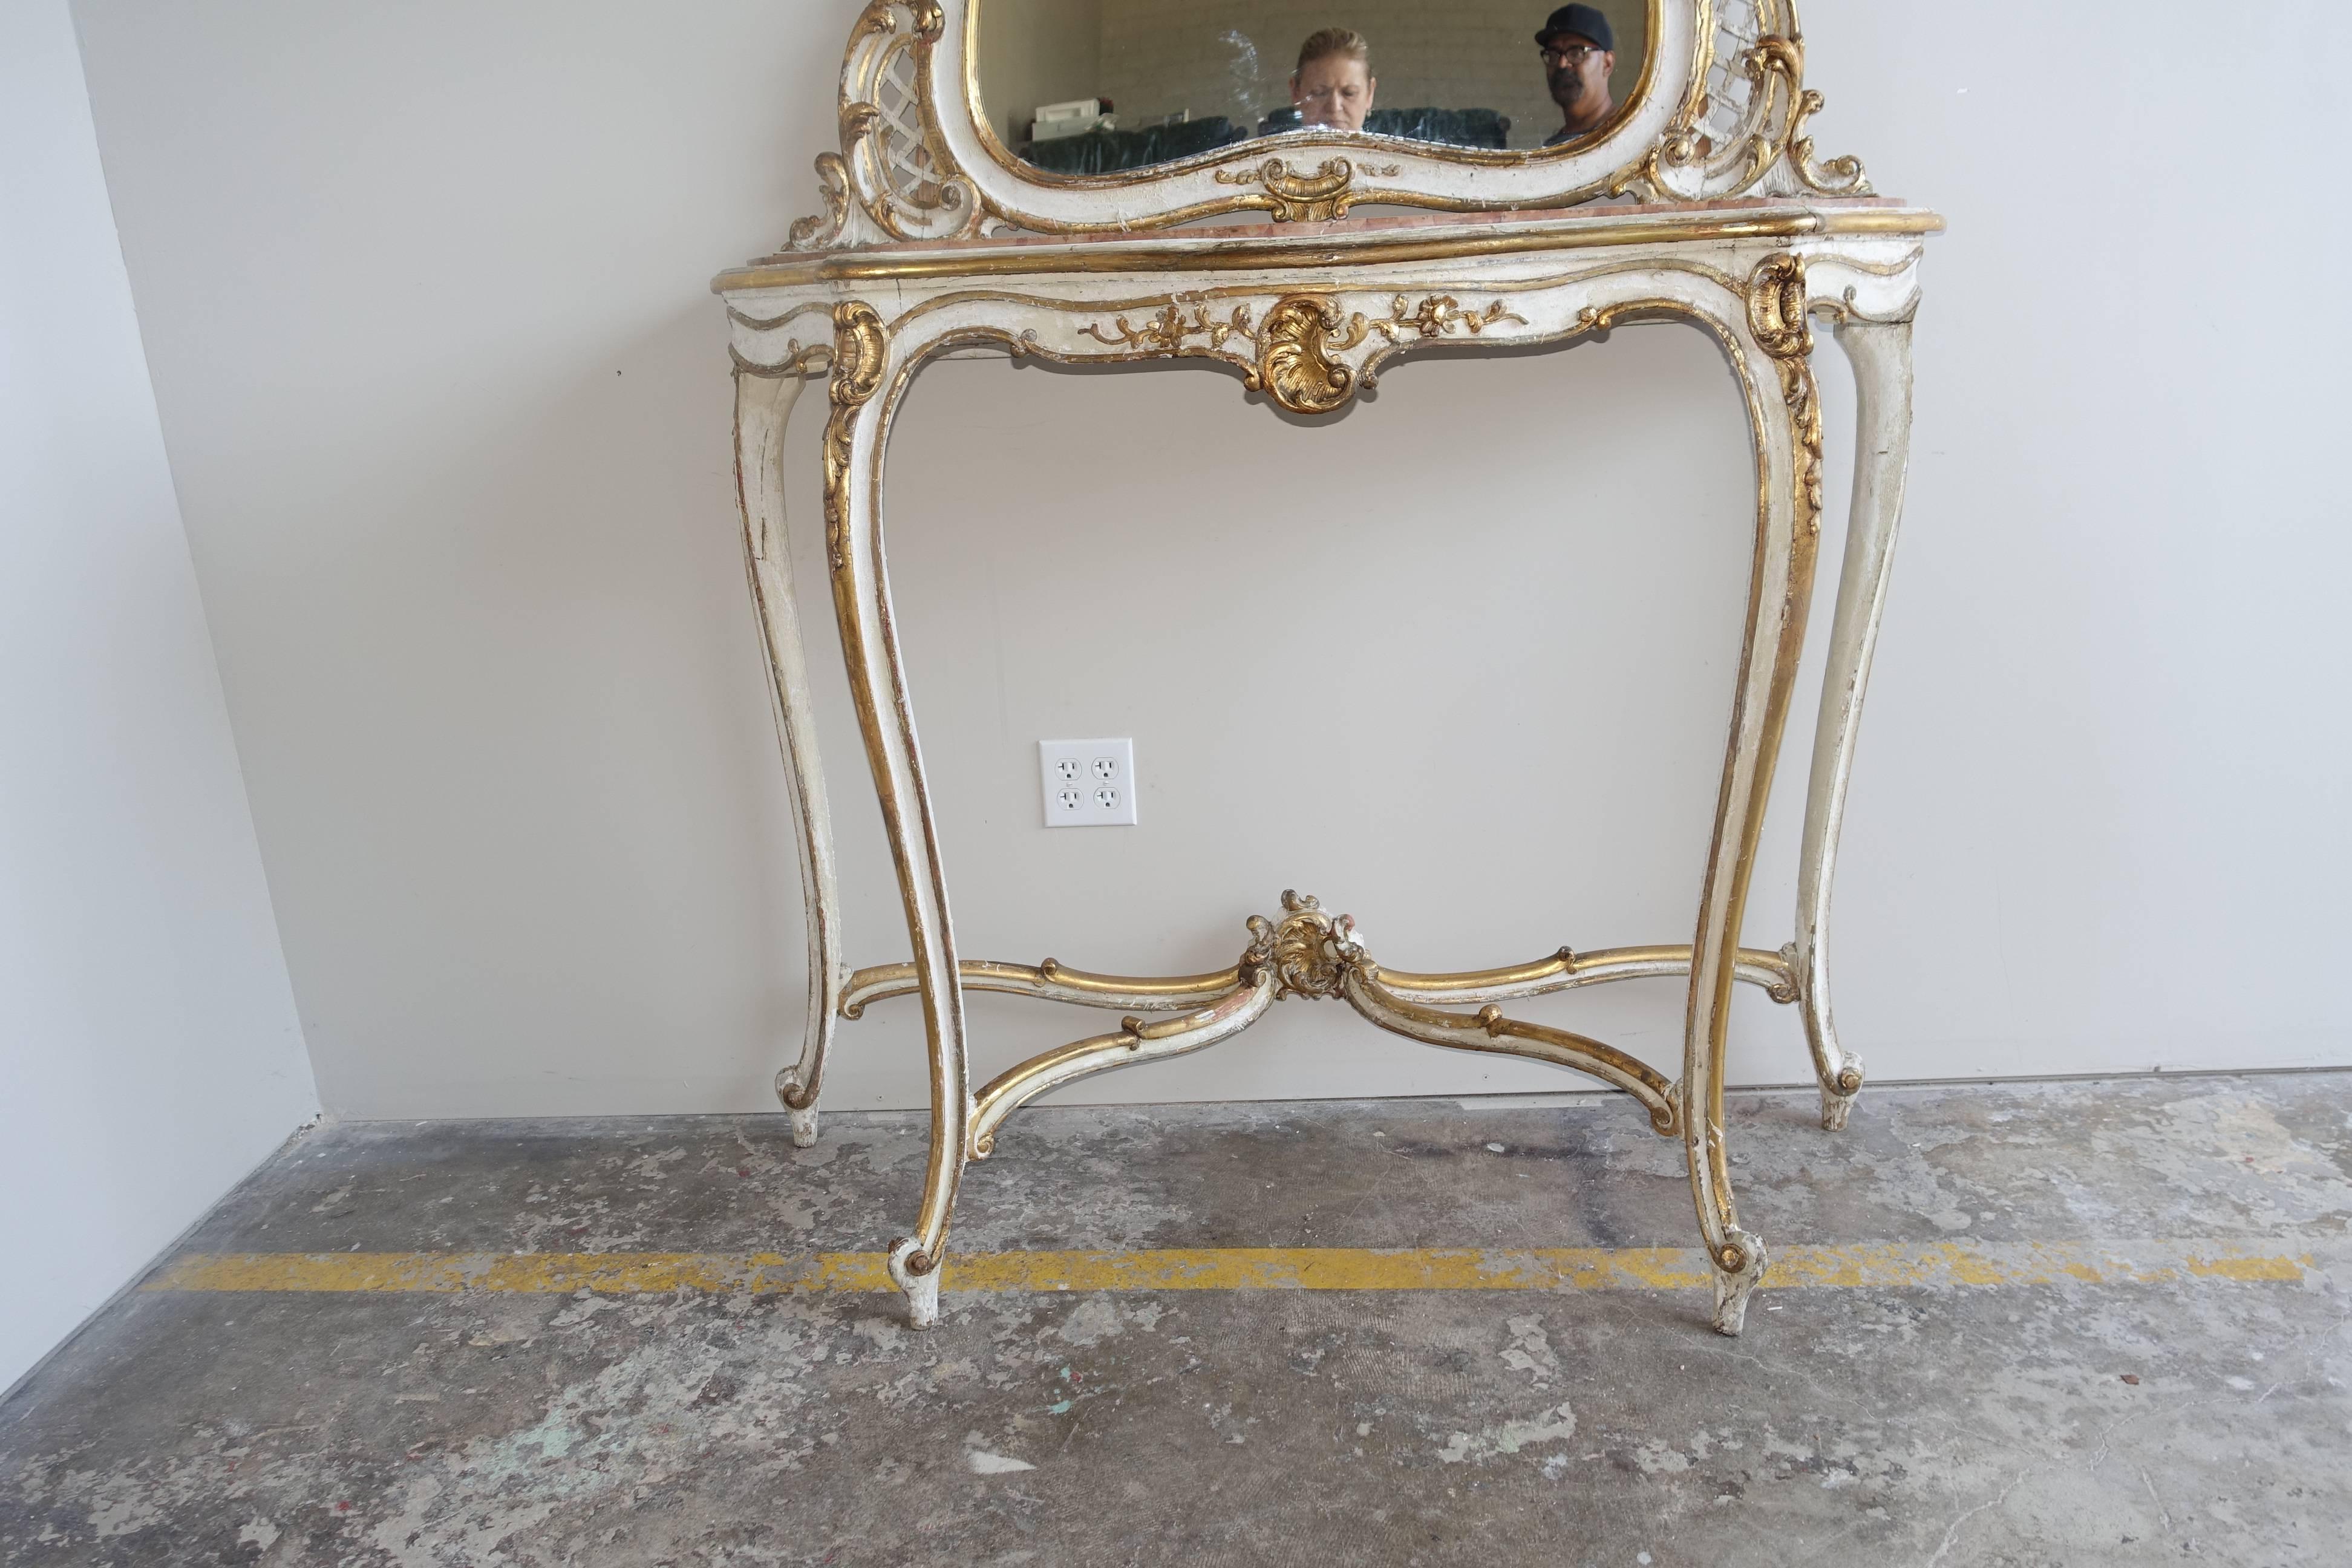 Gemalte und paketvergoldete Konsole und Spiegel im Louis XVI-Stil mit originaler Marmorplatte. Die Konsole steht auf vier eleganten Cabriole-Beinen mit Widderkopffüßen. Die untere Bahre trifft sich in der Mitte des Kreuzblatts. Akanthusblatt-Details